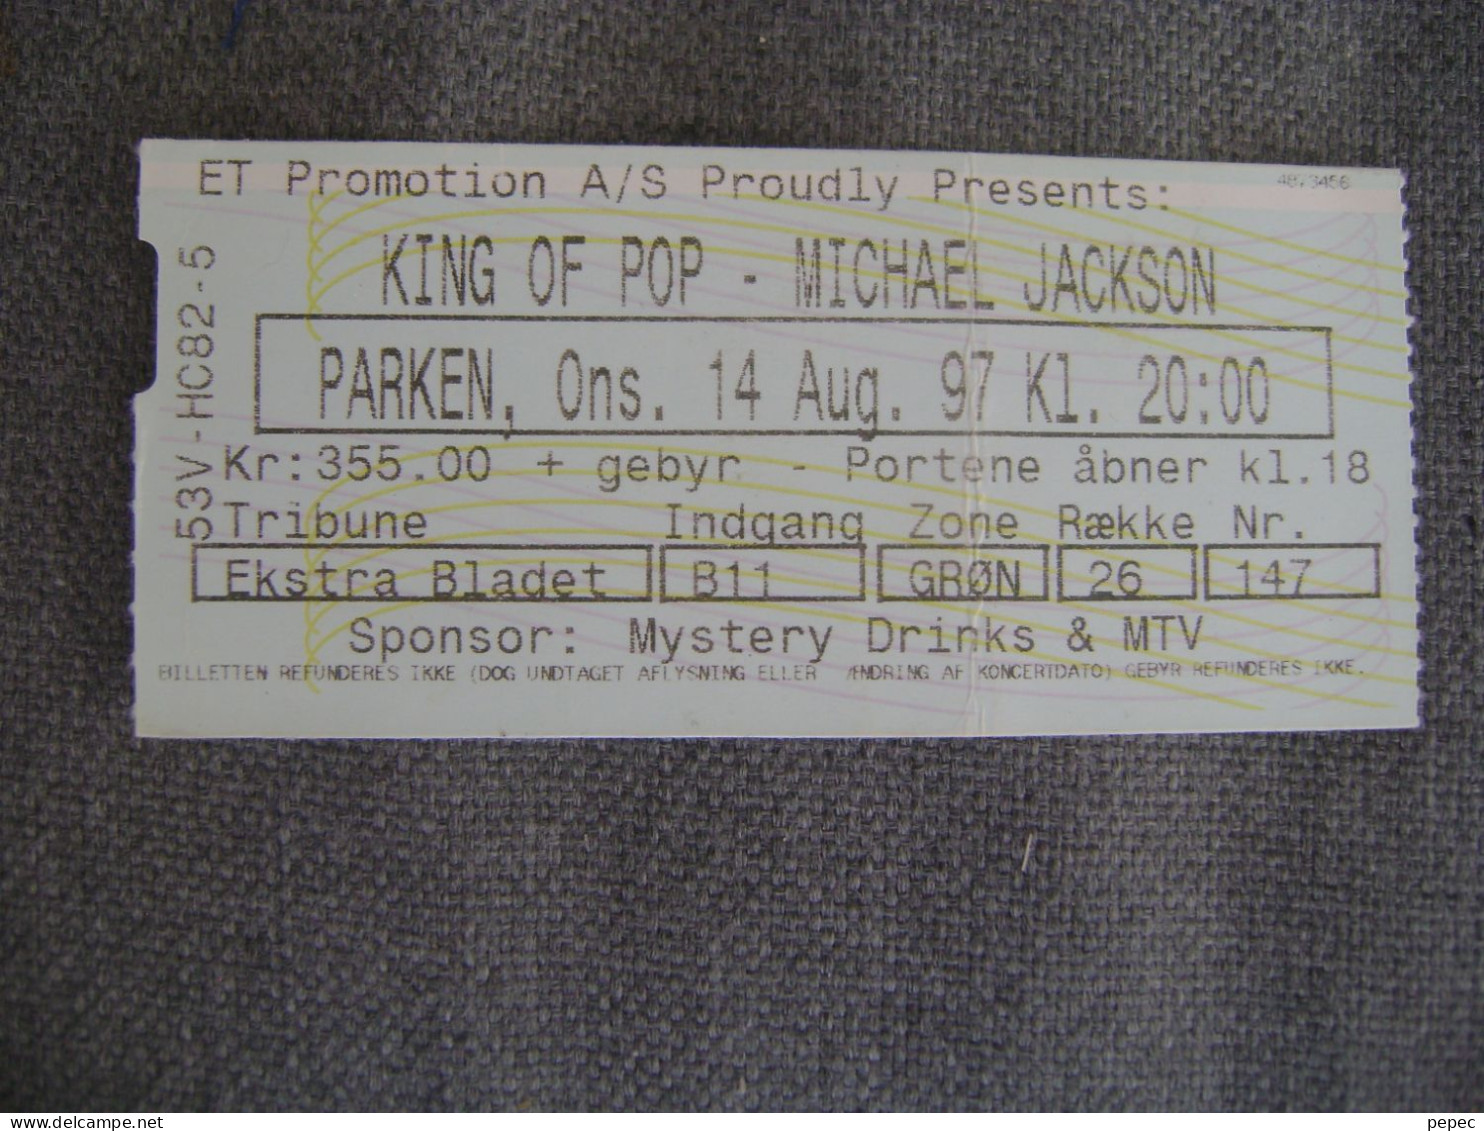 MICHAEL JACKSON  PARKEN - KOPENHAGEN  14/08/1997 - Concert Tickets